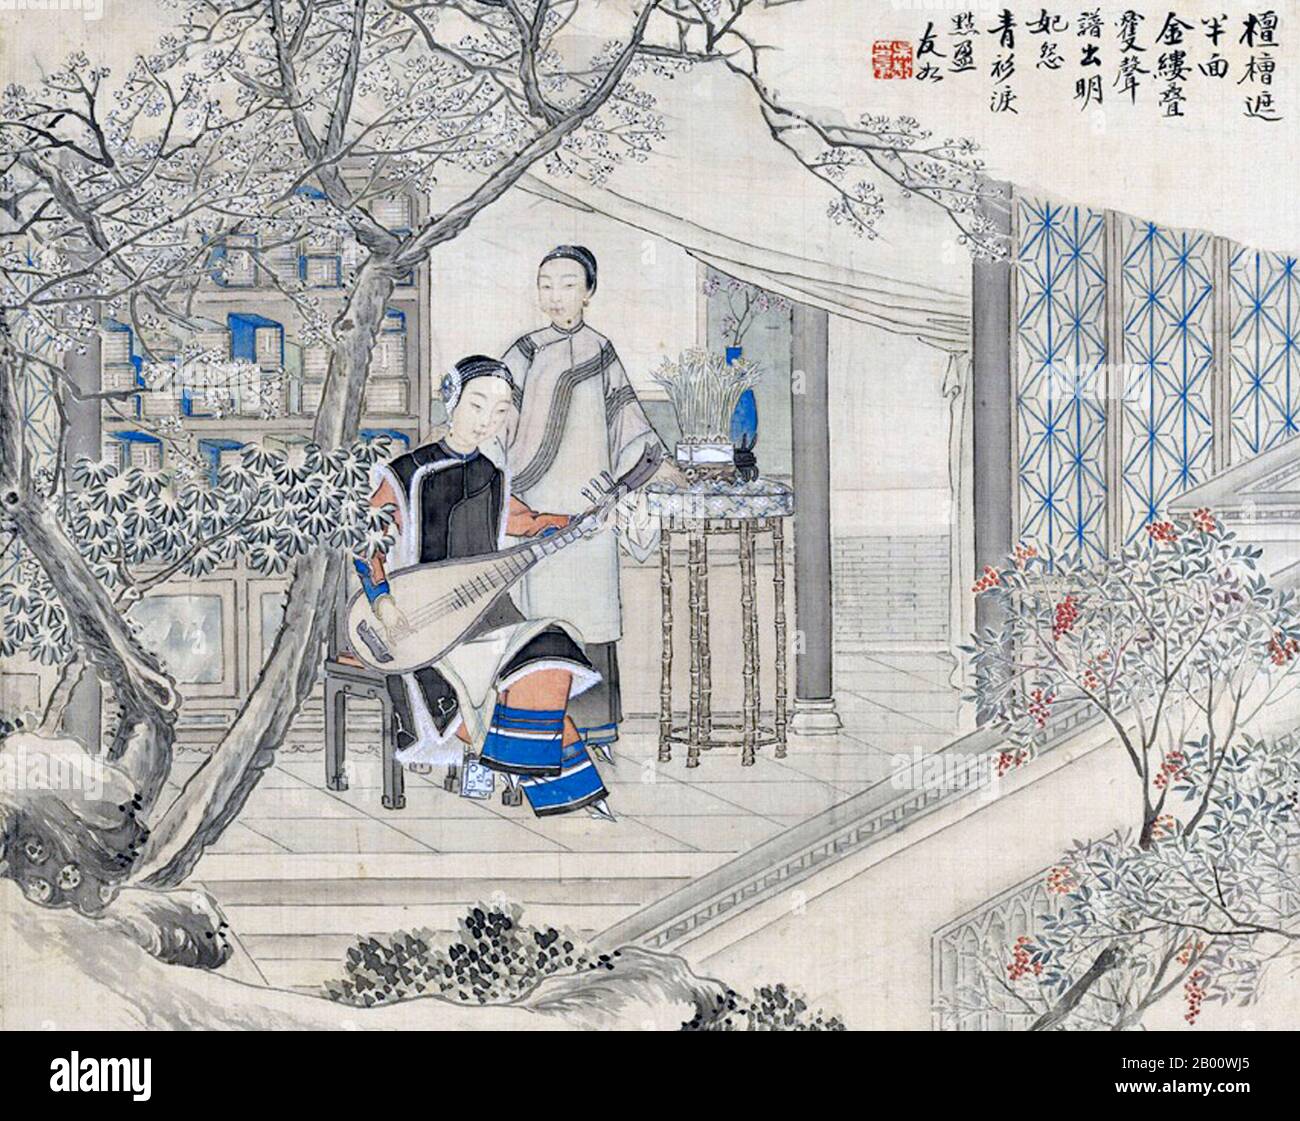 China: Eine Dame mit gefesselten Füßen, die ein Musikinstrument spielt, wird von ihrer Magd in einem Suzhou-Garten betreut. Gemälde von Wu Youru (c. 1839-1893), Ende des 19. Jahrhunderts. Suzhou, die Stadt der Kanäle und Gärten, wurde von Marco Polo als ‘Venedig des Ostens’ bezeichnet. Ein altes chinesisches Sprichwort besagt: ‘im Himmel gibt es das Paradies; auf Erden gibt es Suzhou’. Die Liebesbeziehung zwischen der Stadt und den Gärten reicht 2,500 Jahre zurück und dauert noch immer an. Zur Zeit der Ming-Dynastie (1368–1644) gab es 250 Gärten, von denen etwa hundert überleben, obwohl nur wenige für die Öffentlichkeit zugänglich sind. Stockfoto